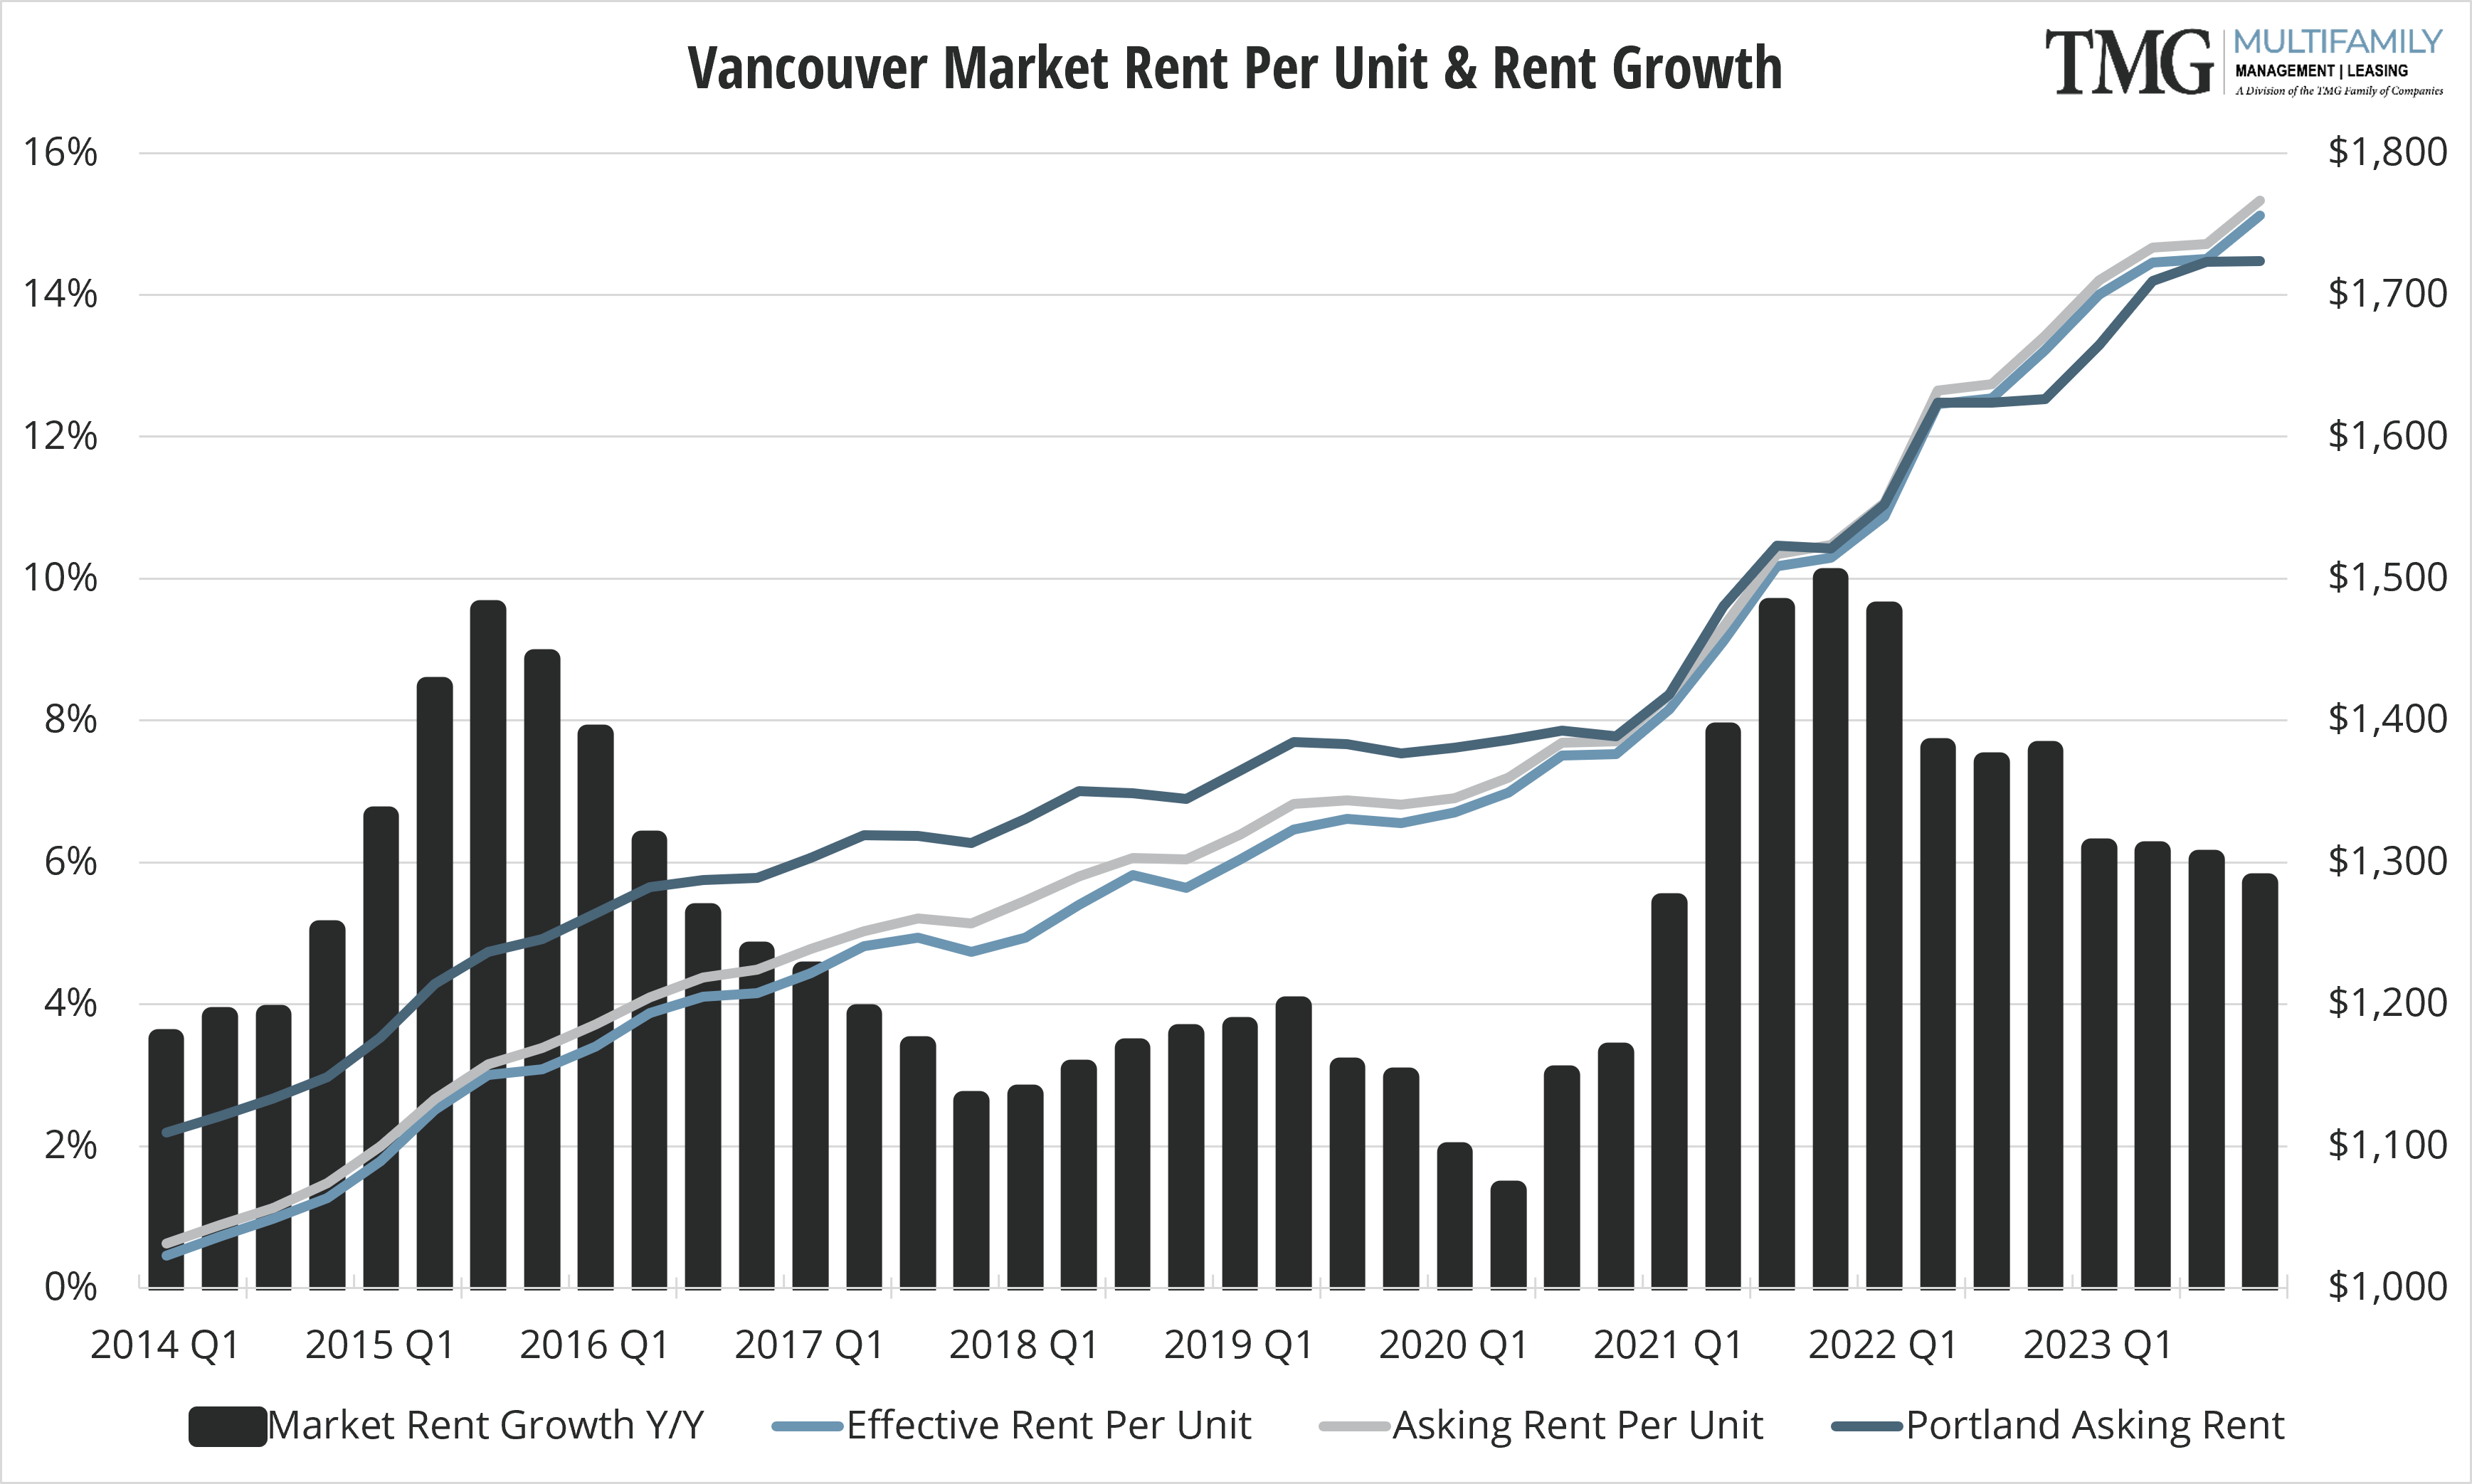 Vancouver Market Rent Per Unit & Rent Growth